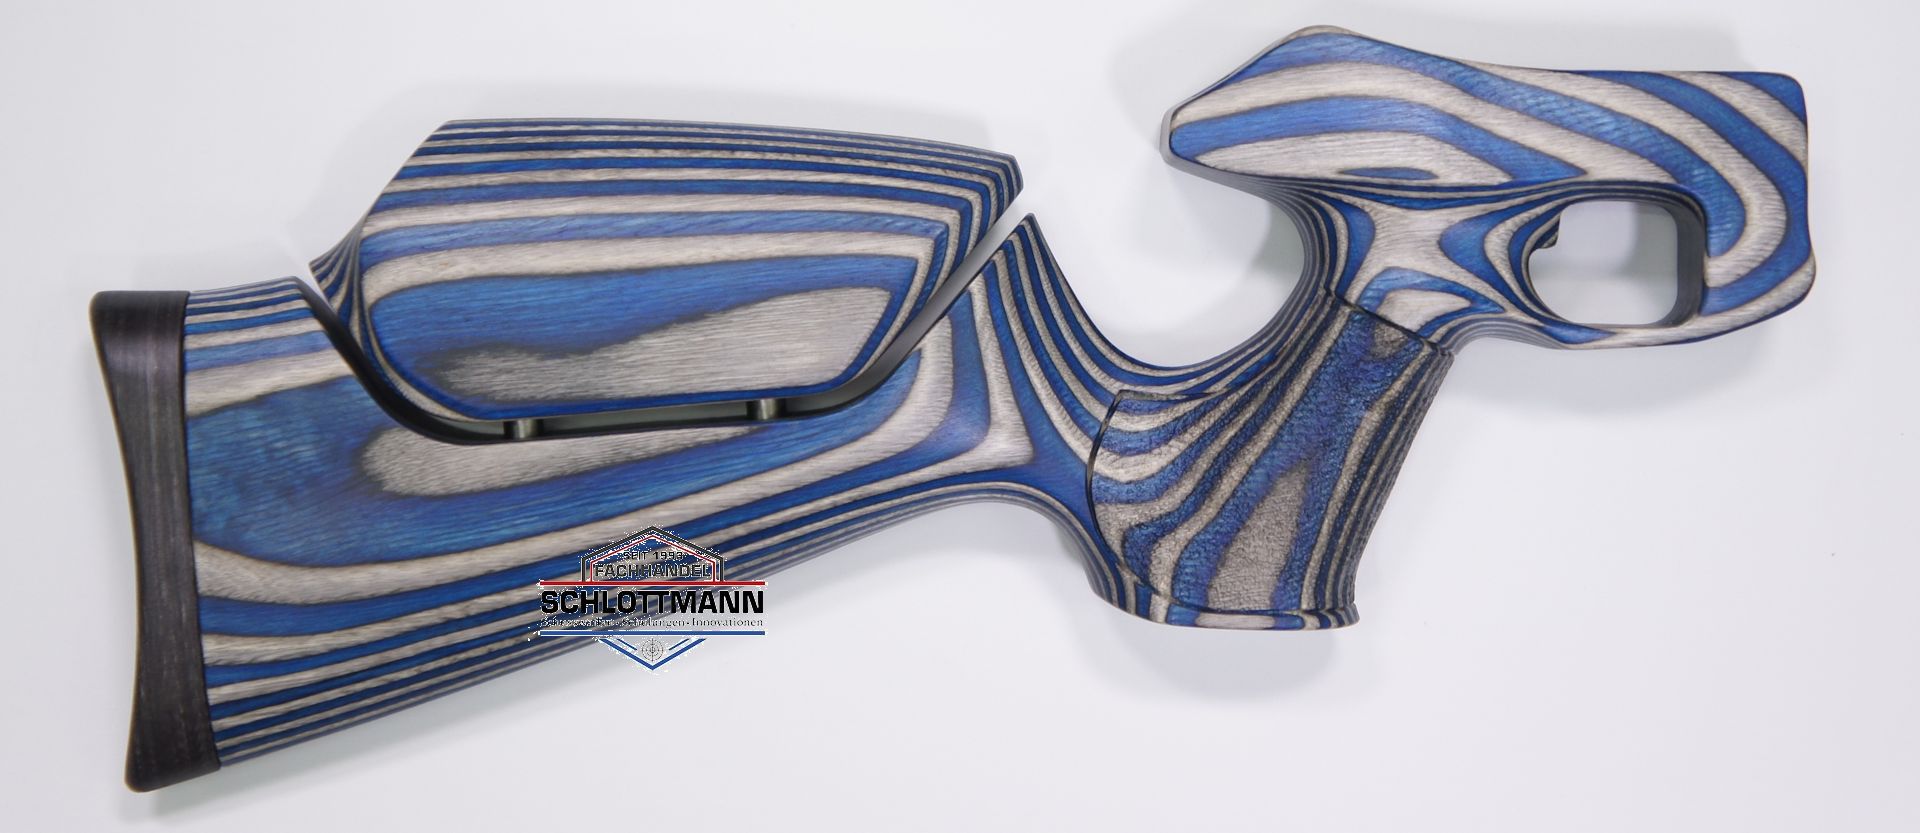 Anschlagschaft für CO2 Pistole Diana Airbug aus blau-grauem Schichtholz mit verstellbarer Schaftbacke